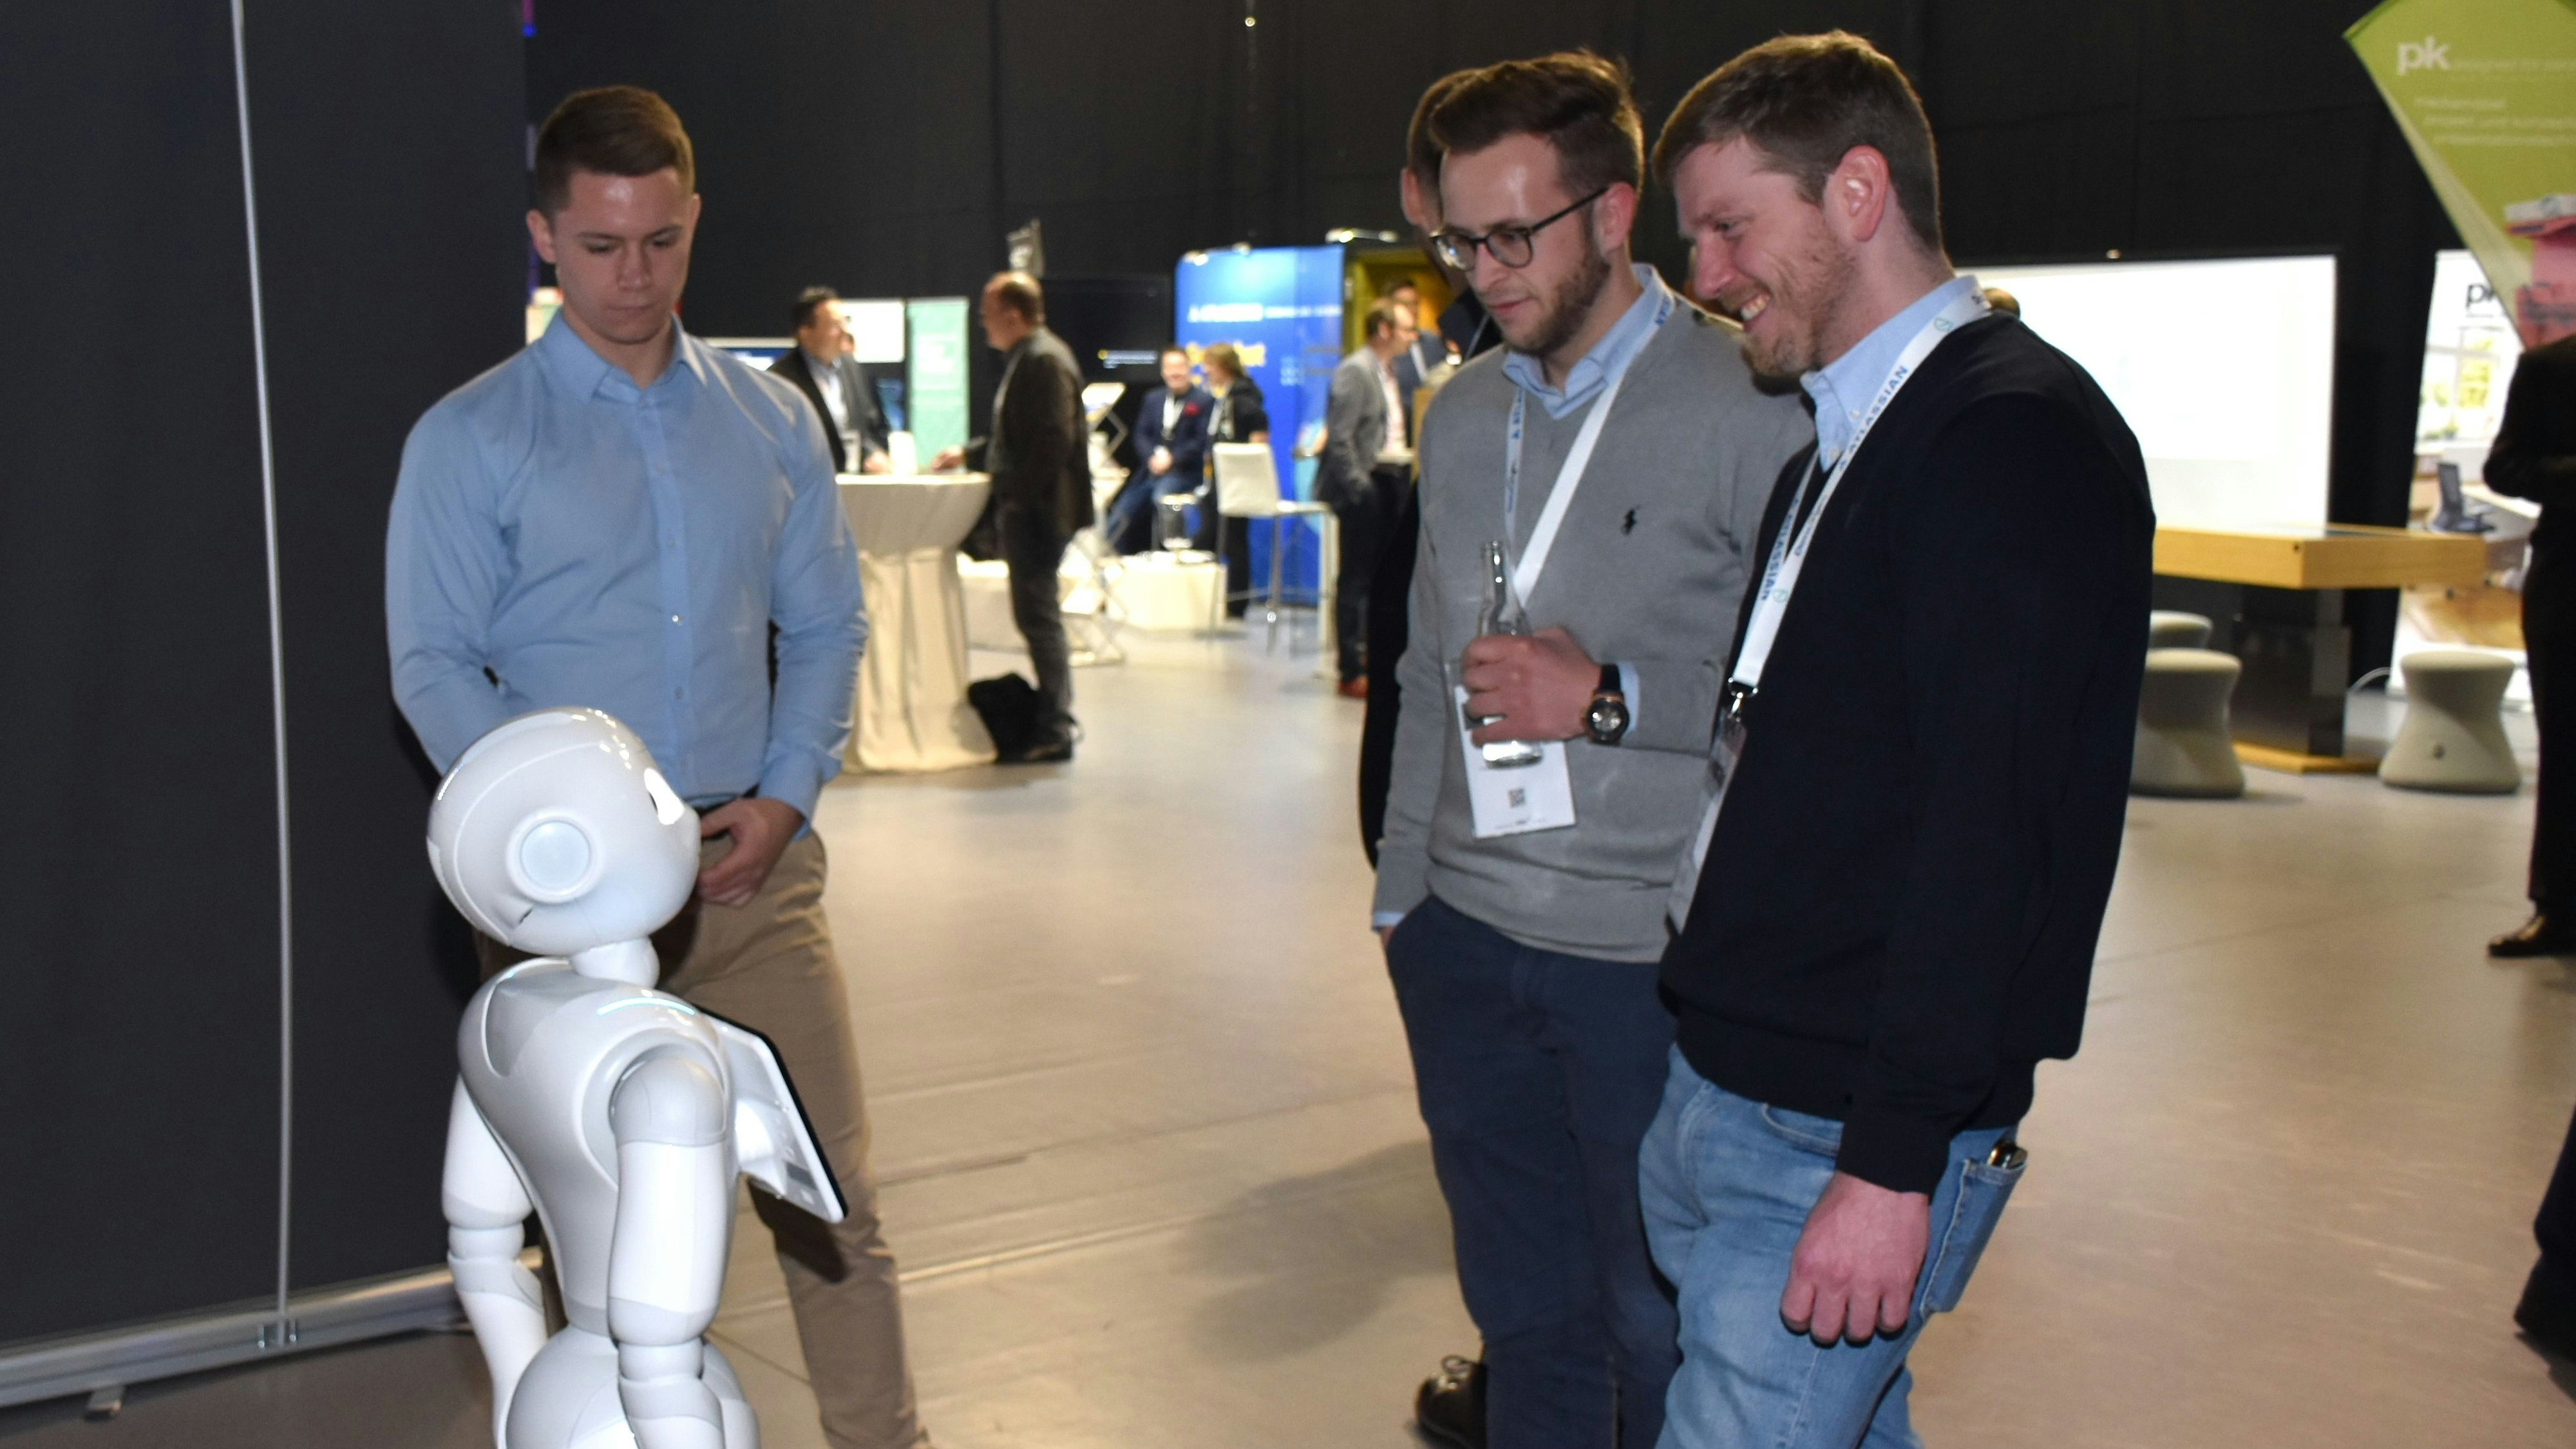 Zog im März 2019 auf der "VillageCon" viele Neugierige an: Der humanoide Roboter „Pepper“ war seinerzeit ein Sinnbild der aktuellen technischen Entwicklung im Robotersektor. Foto: Kühn